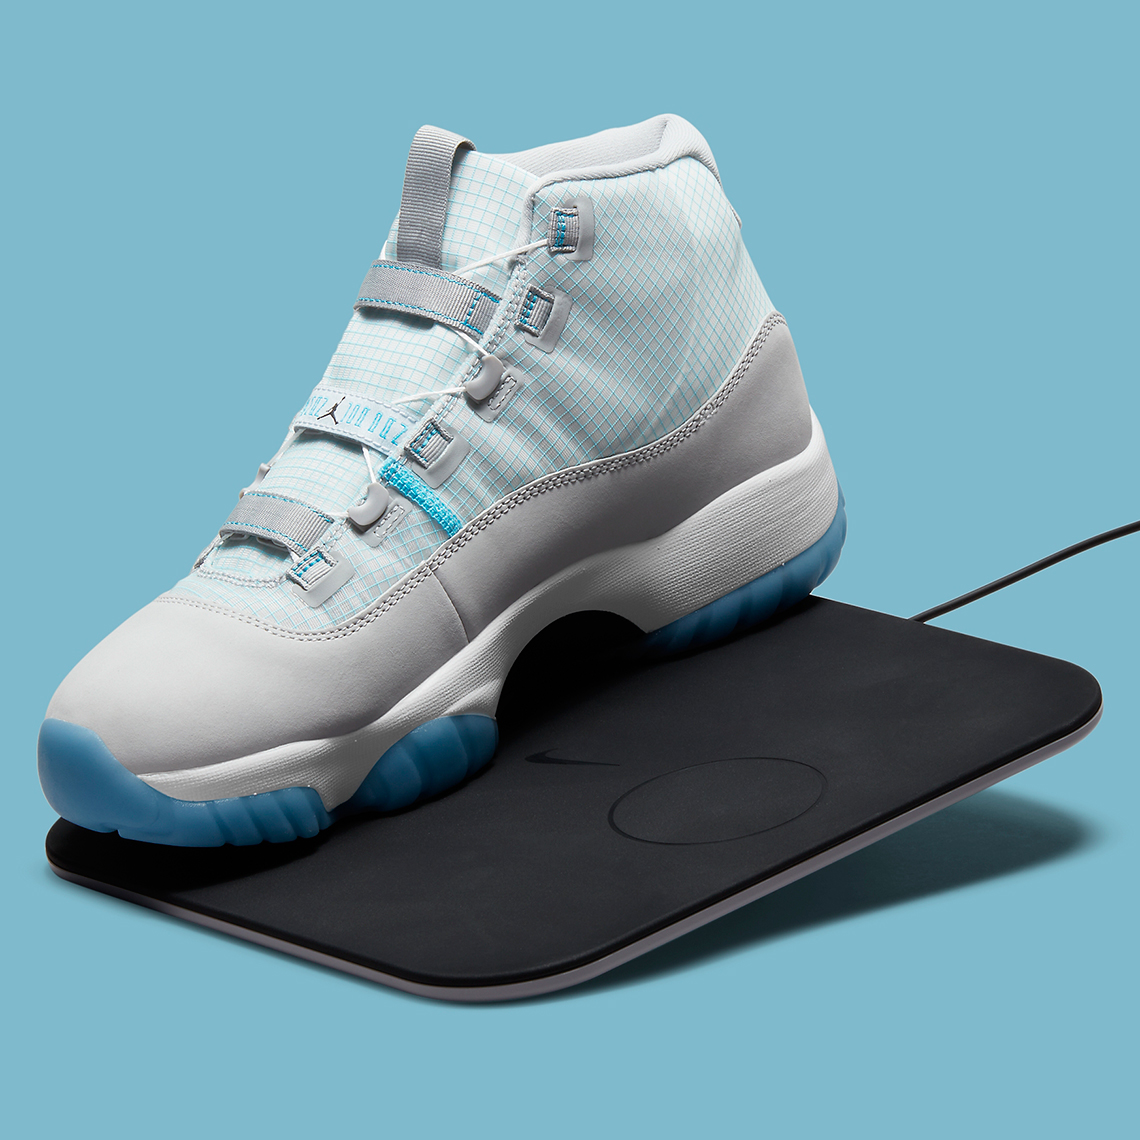 Air Jordan 11 'Adapt' Release Date. Nike SNKRS PT